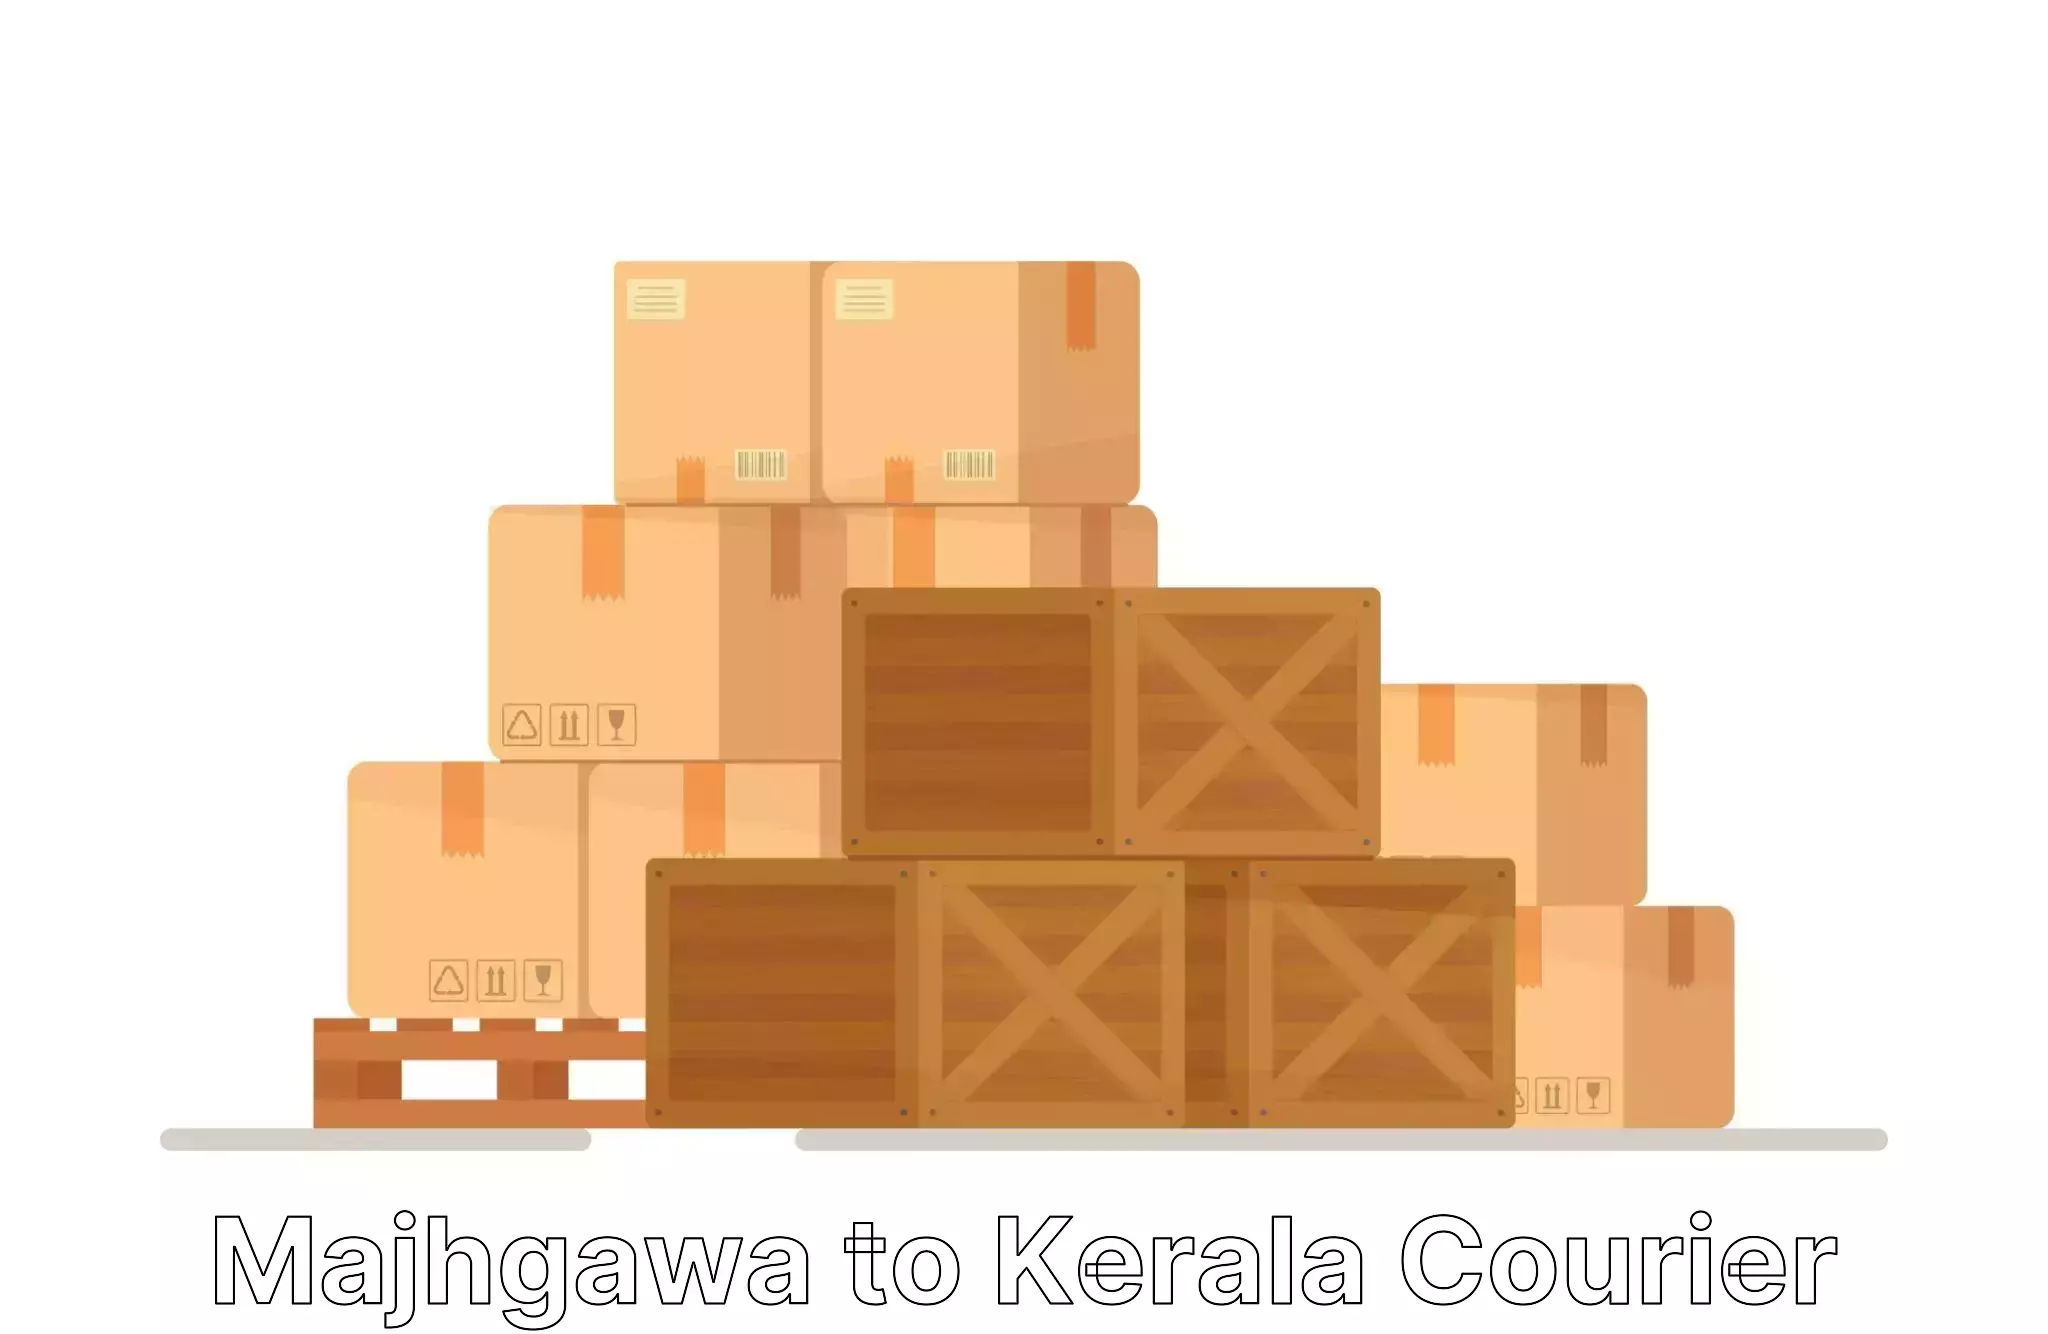 Professional packing and transport Majhgawa to Kollam